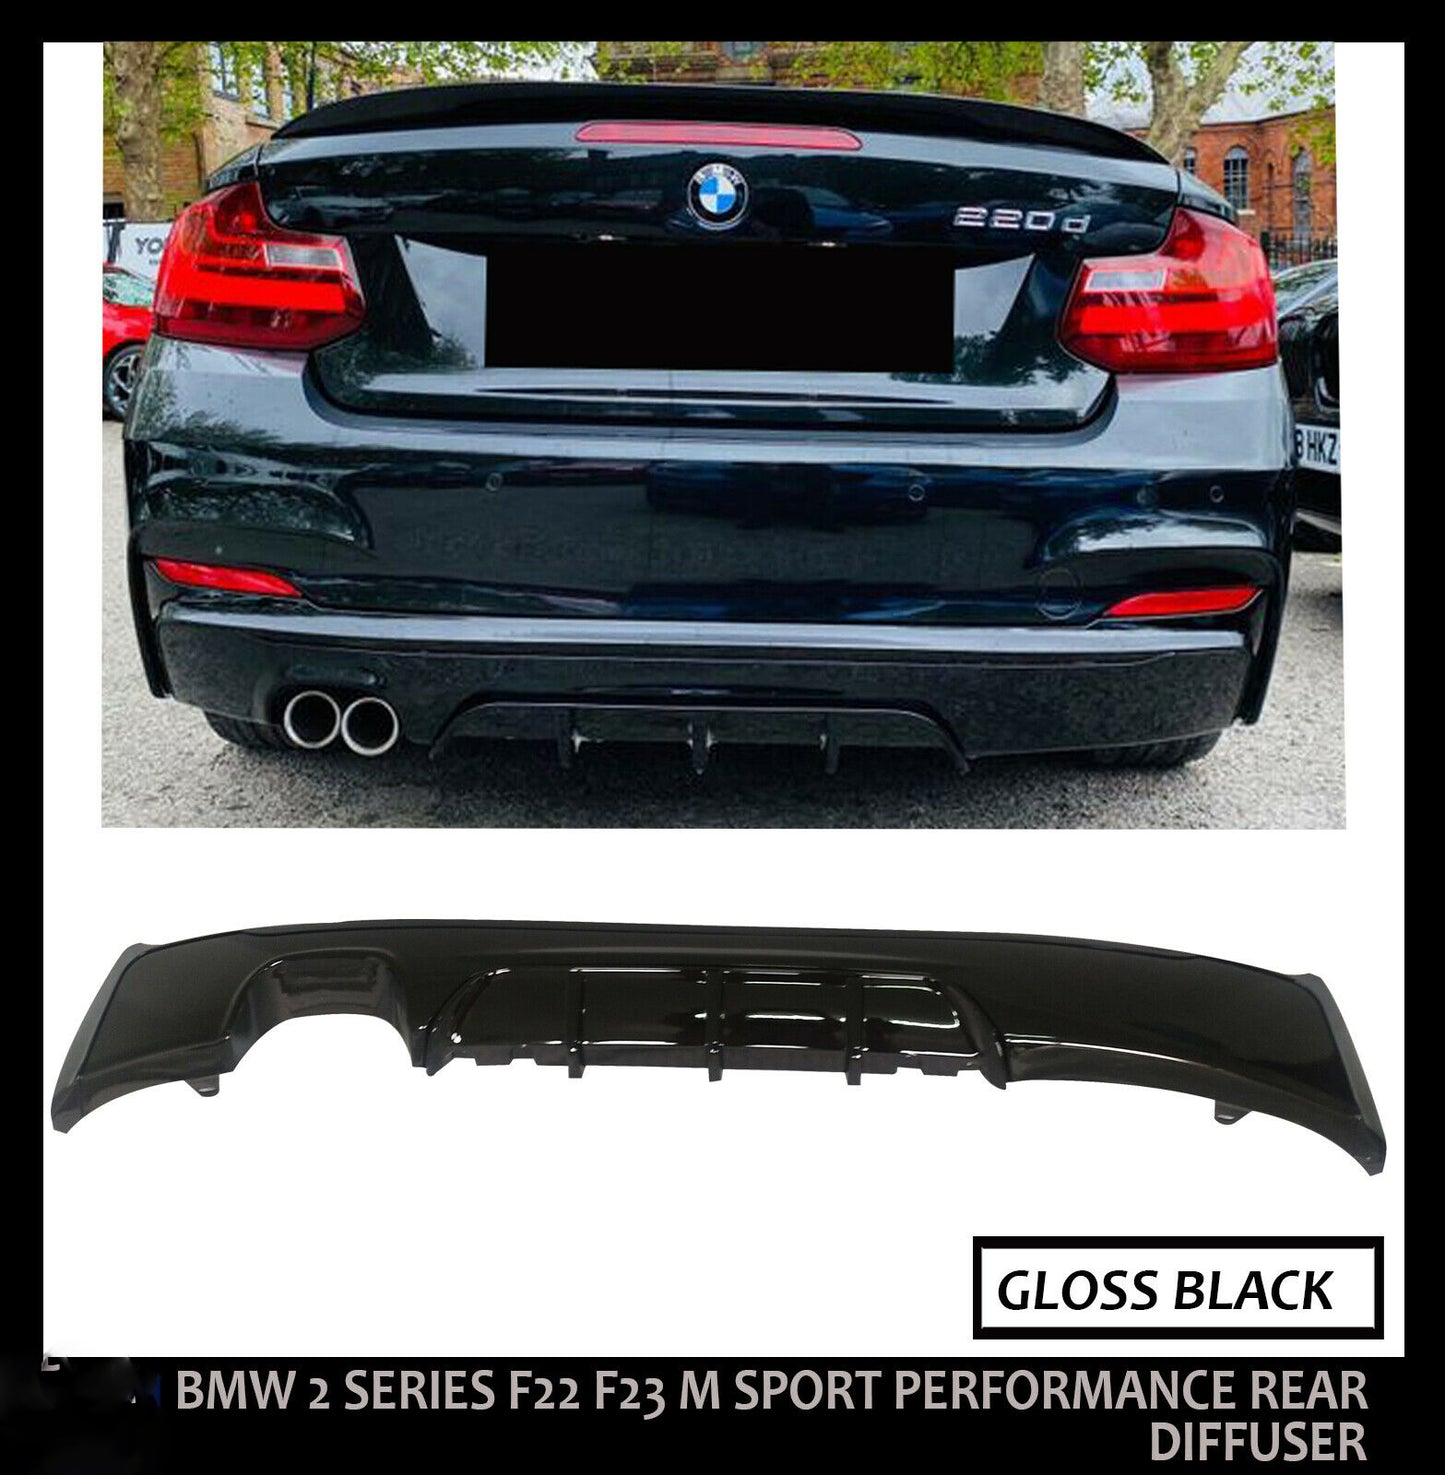 BMW 2 SERIES F22 F23 M SPORT PERFORMANCE REAR DIFFUSER GLOSS BLACK